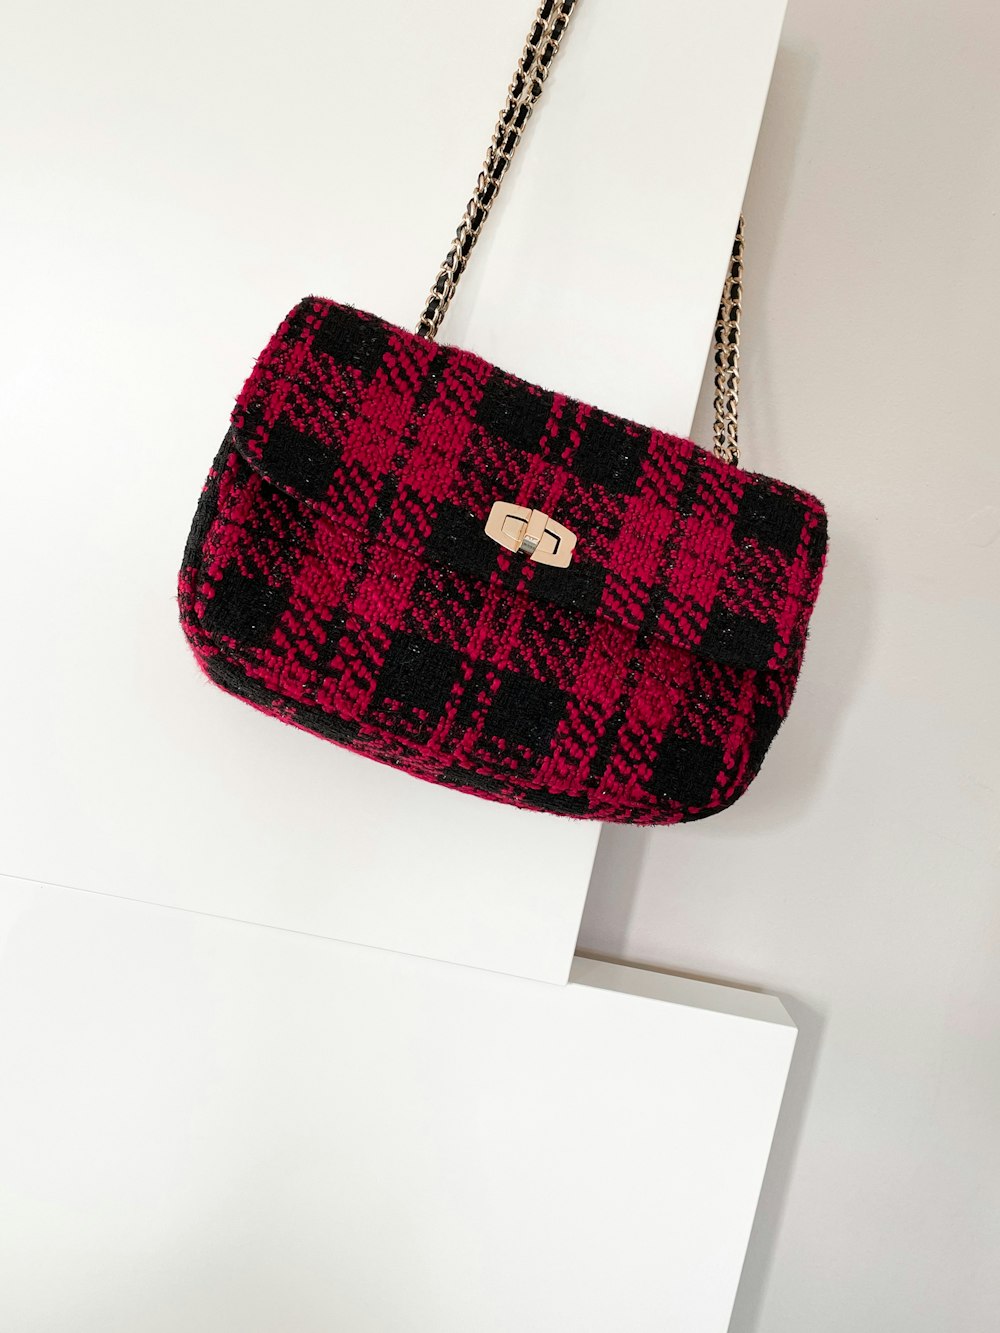 red and black plaid handbag